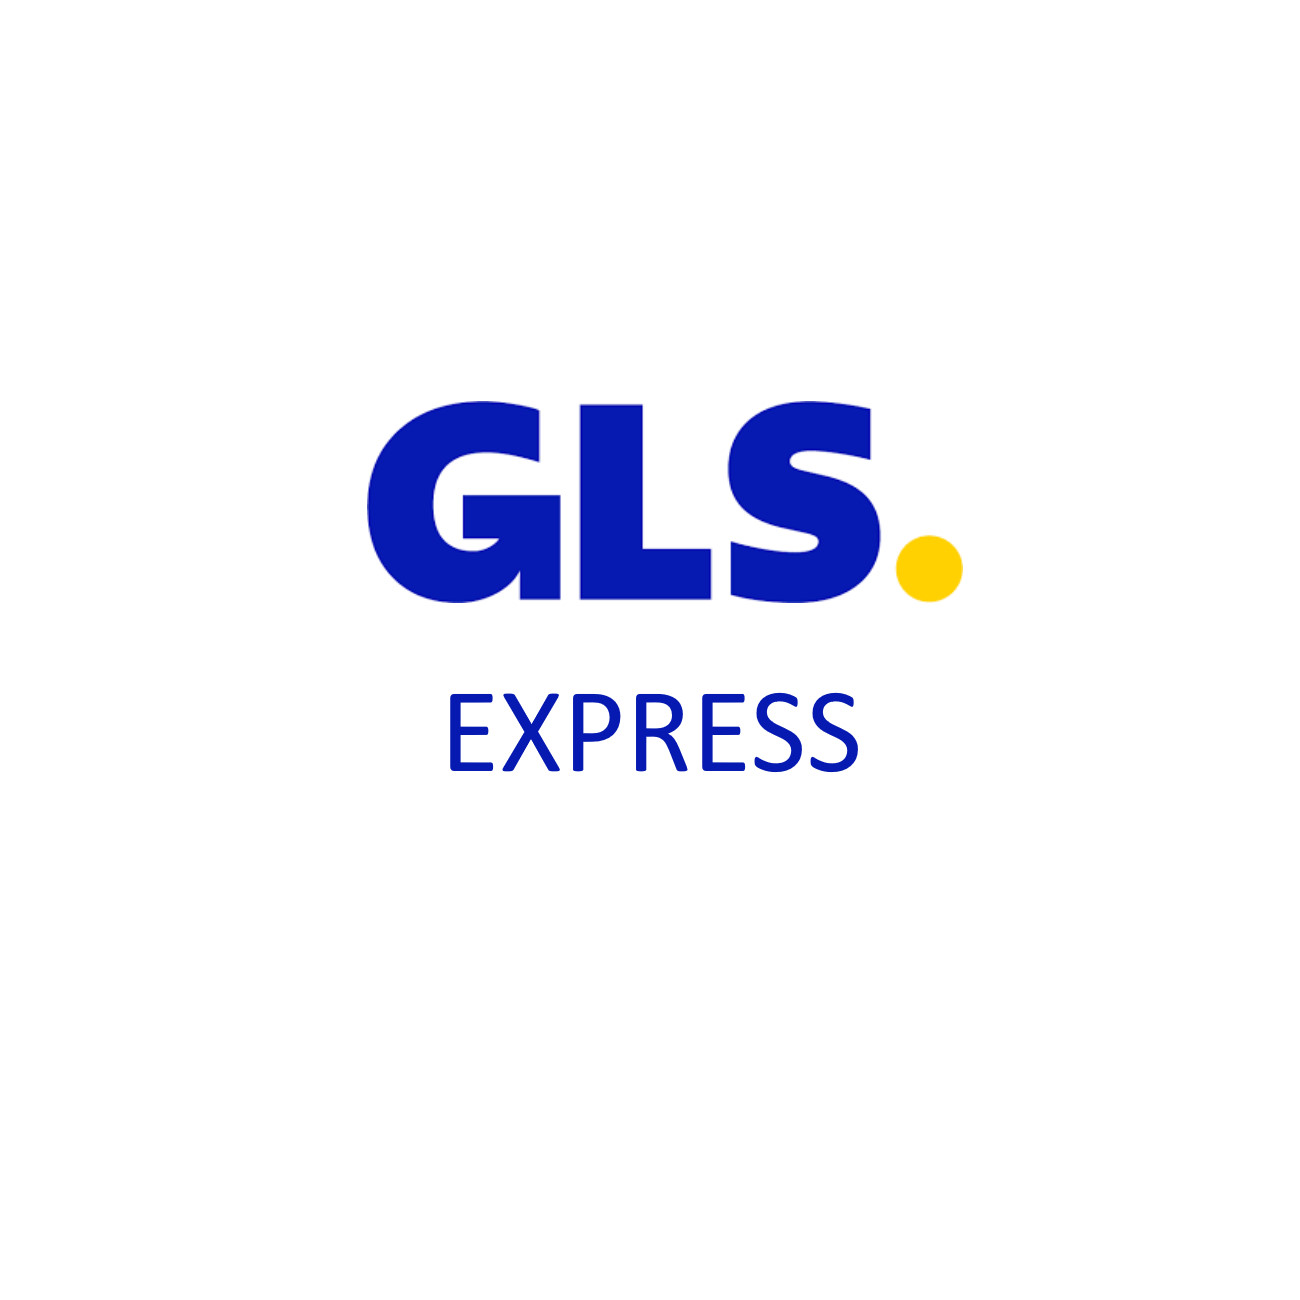 Versand per Express - nächster Werktag bis 12.00 Uhr